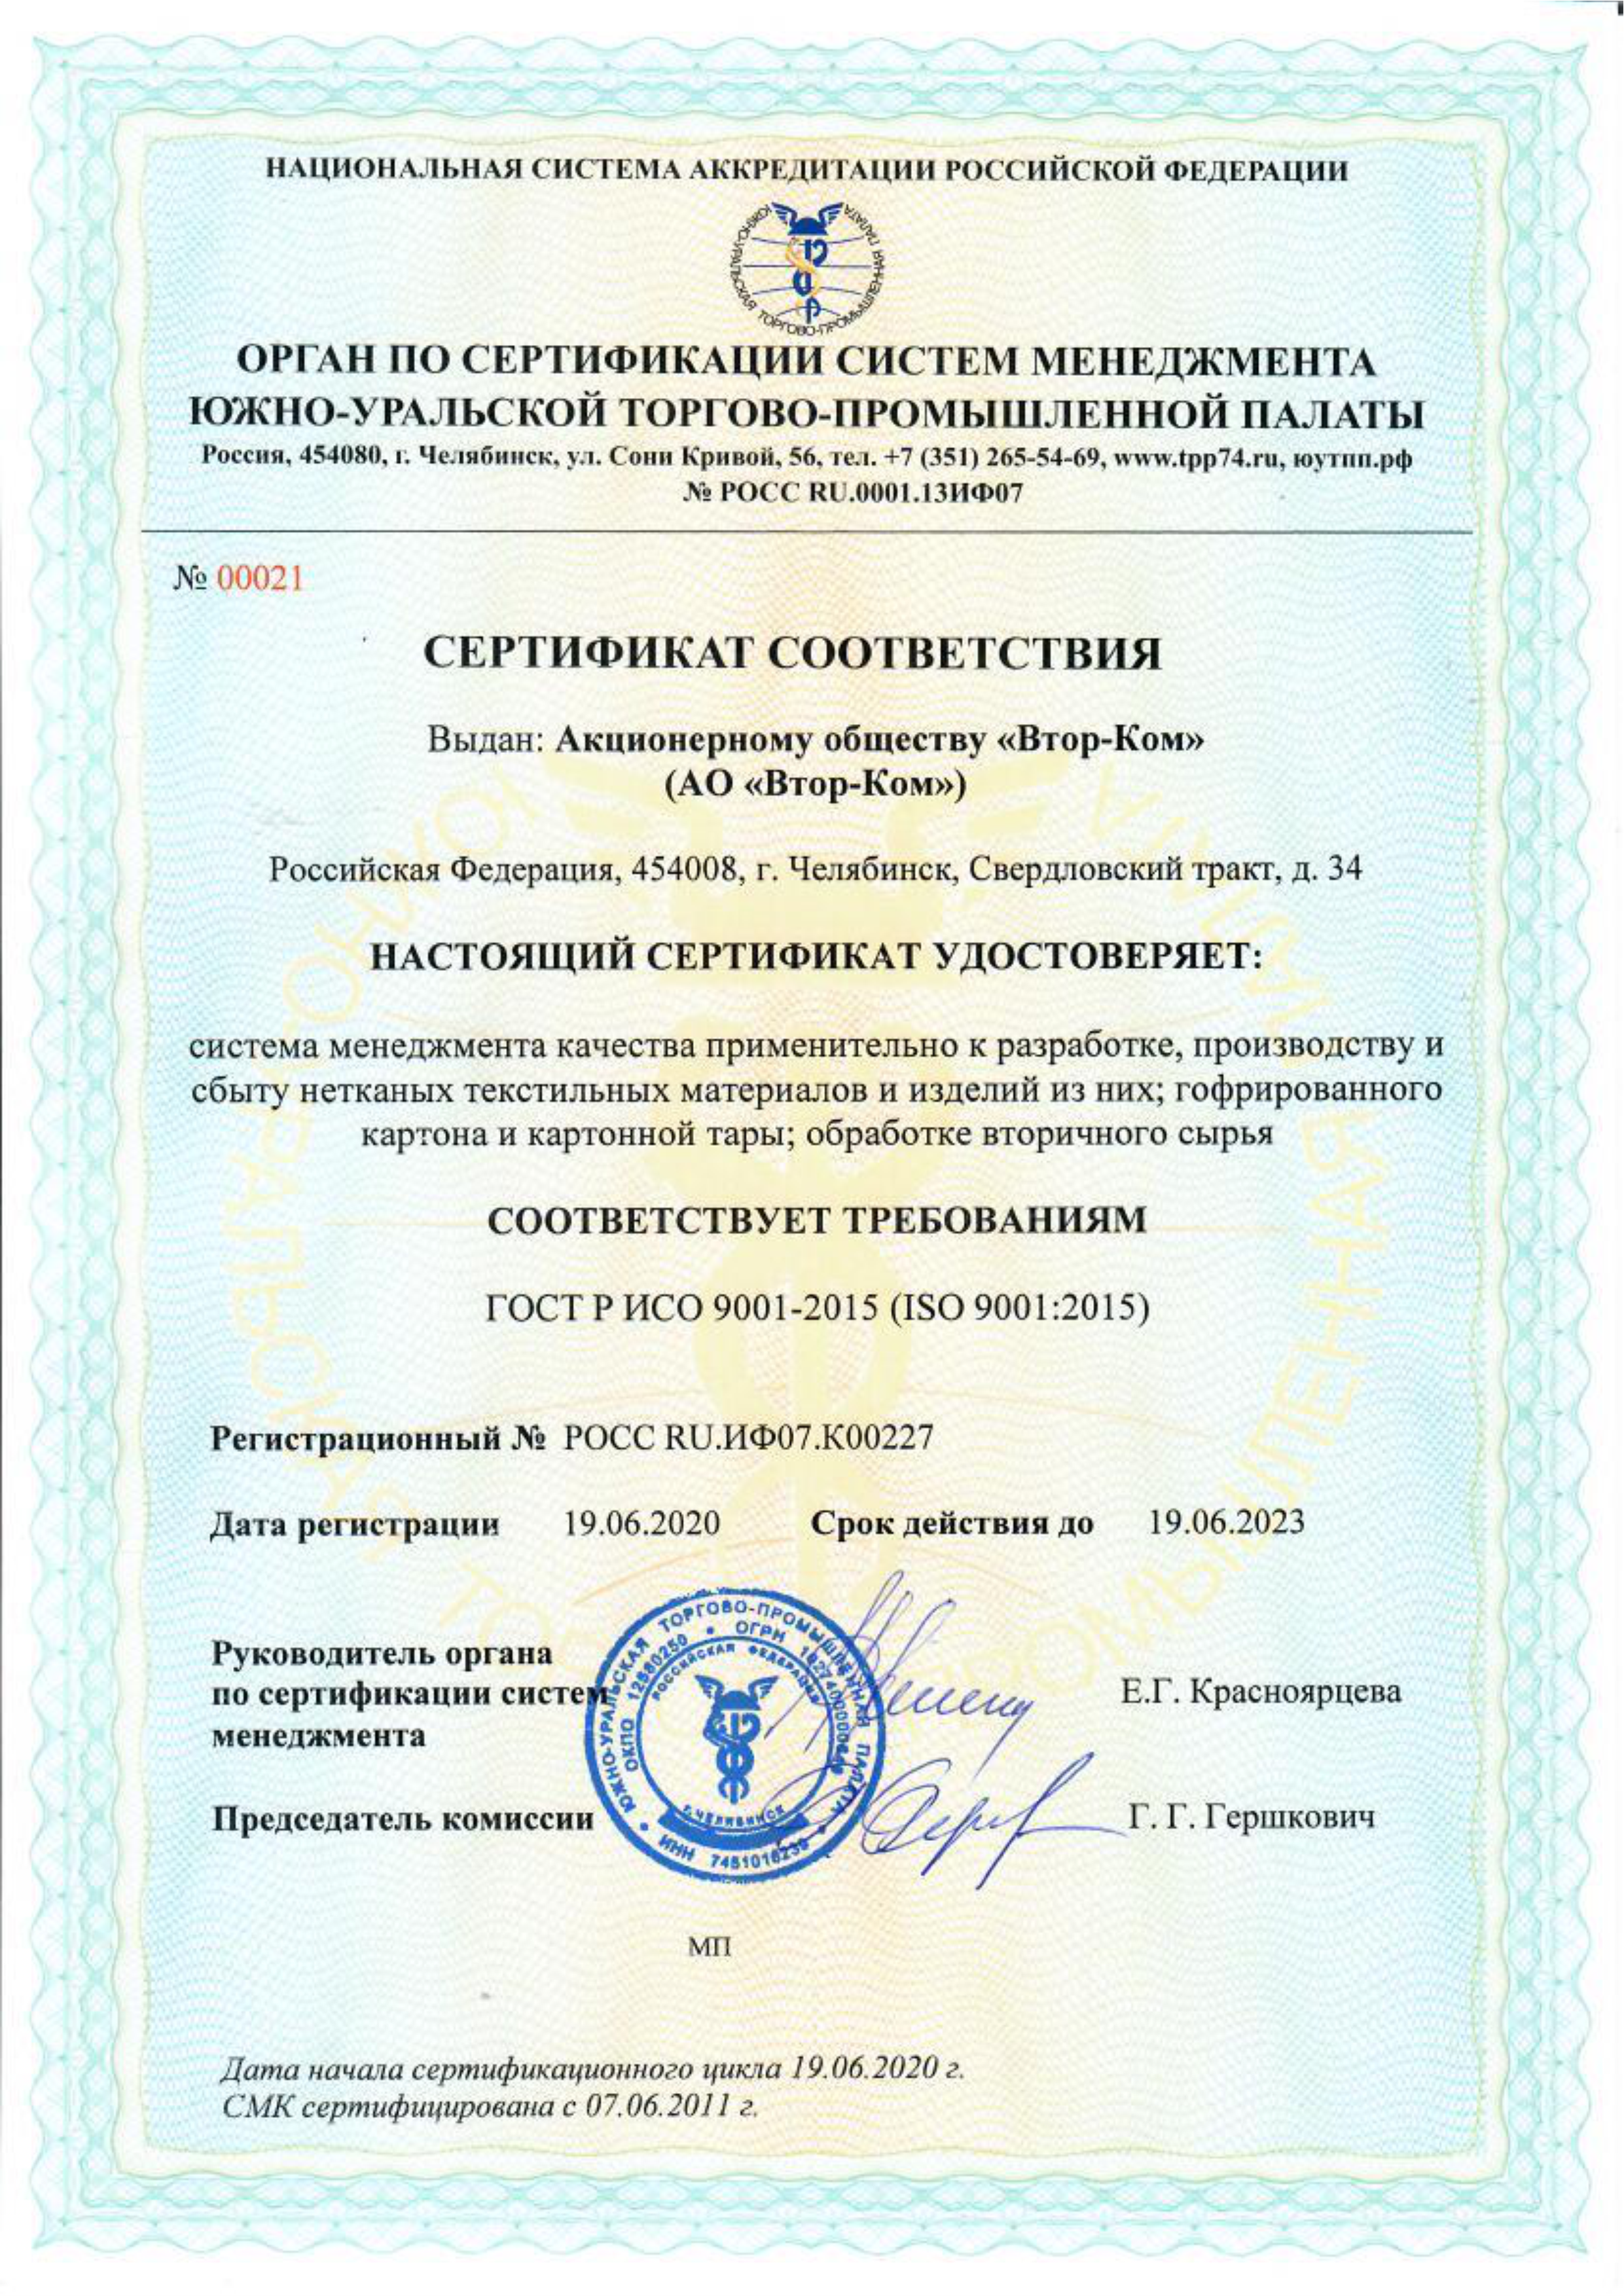 Сертификат соответствия системы менеджмента качества требованиям 9001. Сертификат менеджмента качества ИСО 9001 что это такое. Сертификат соответствия требованиям ГОСТ Р ИСО 9001-2015. Сертификат СМК ИСО 9001. Сертификат смк 9001